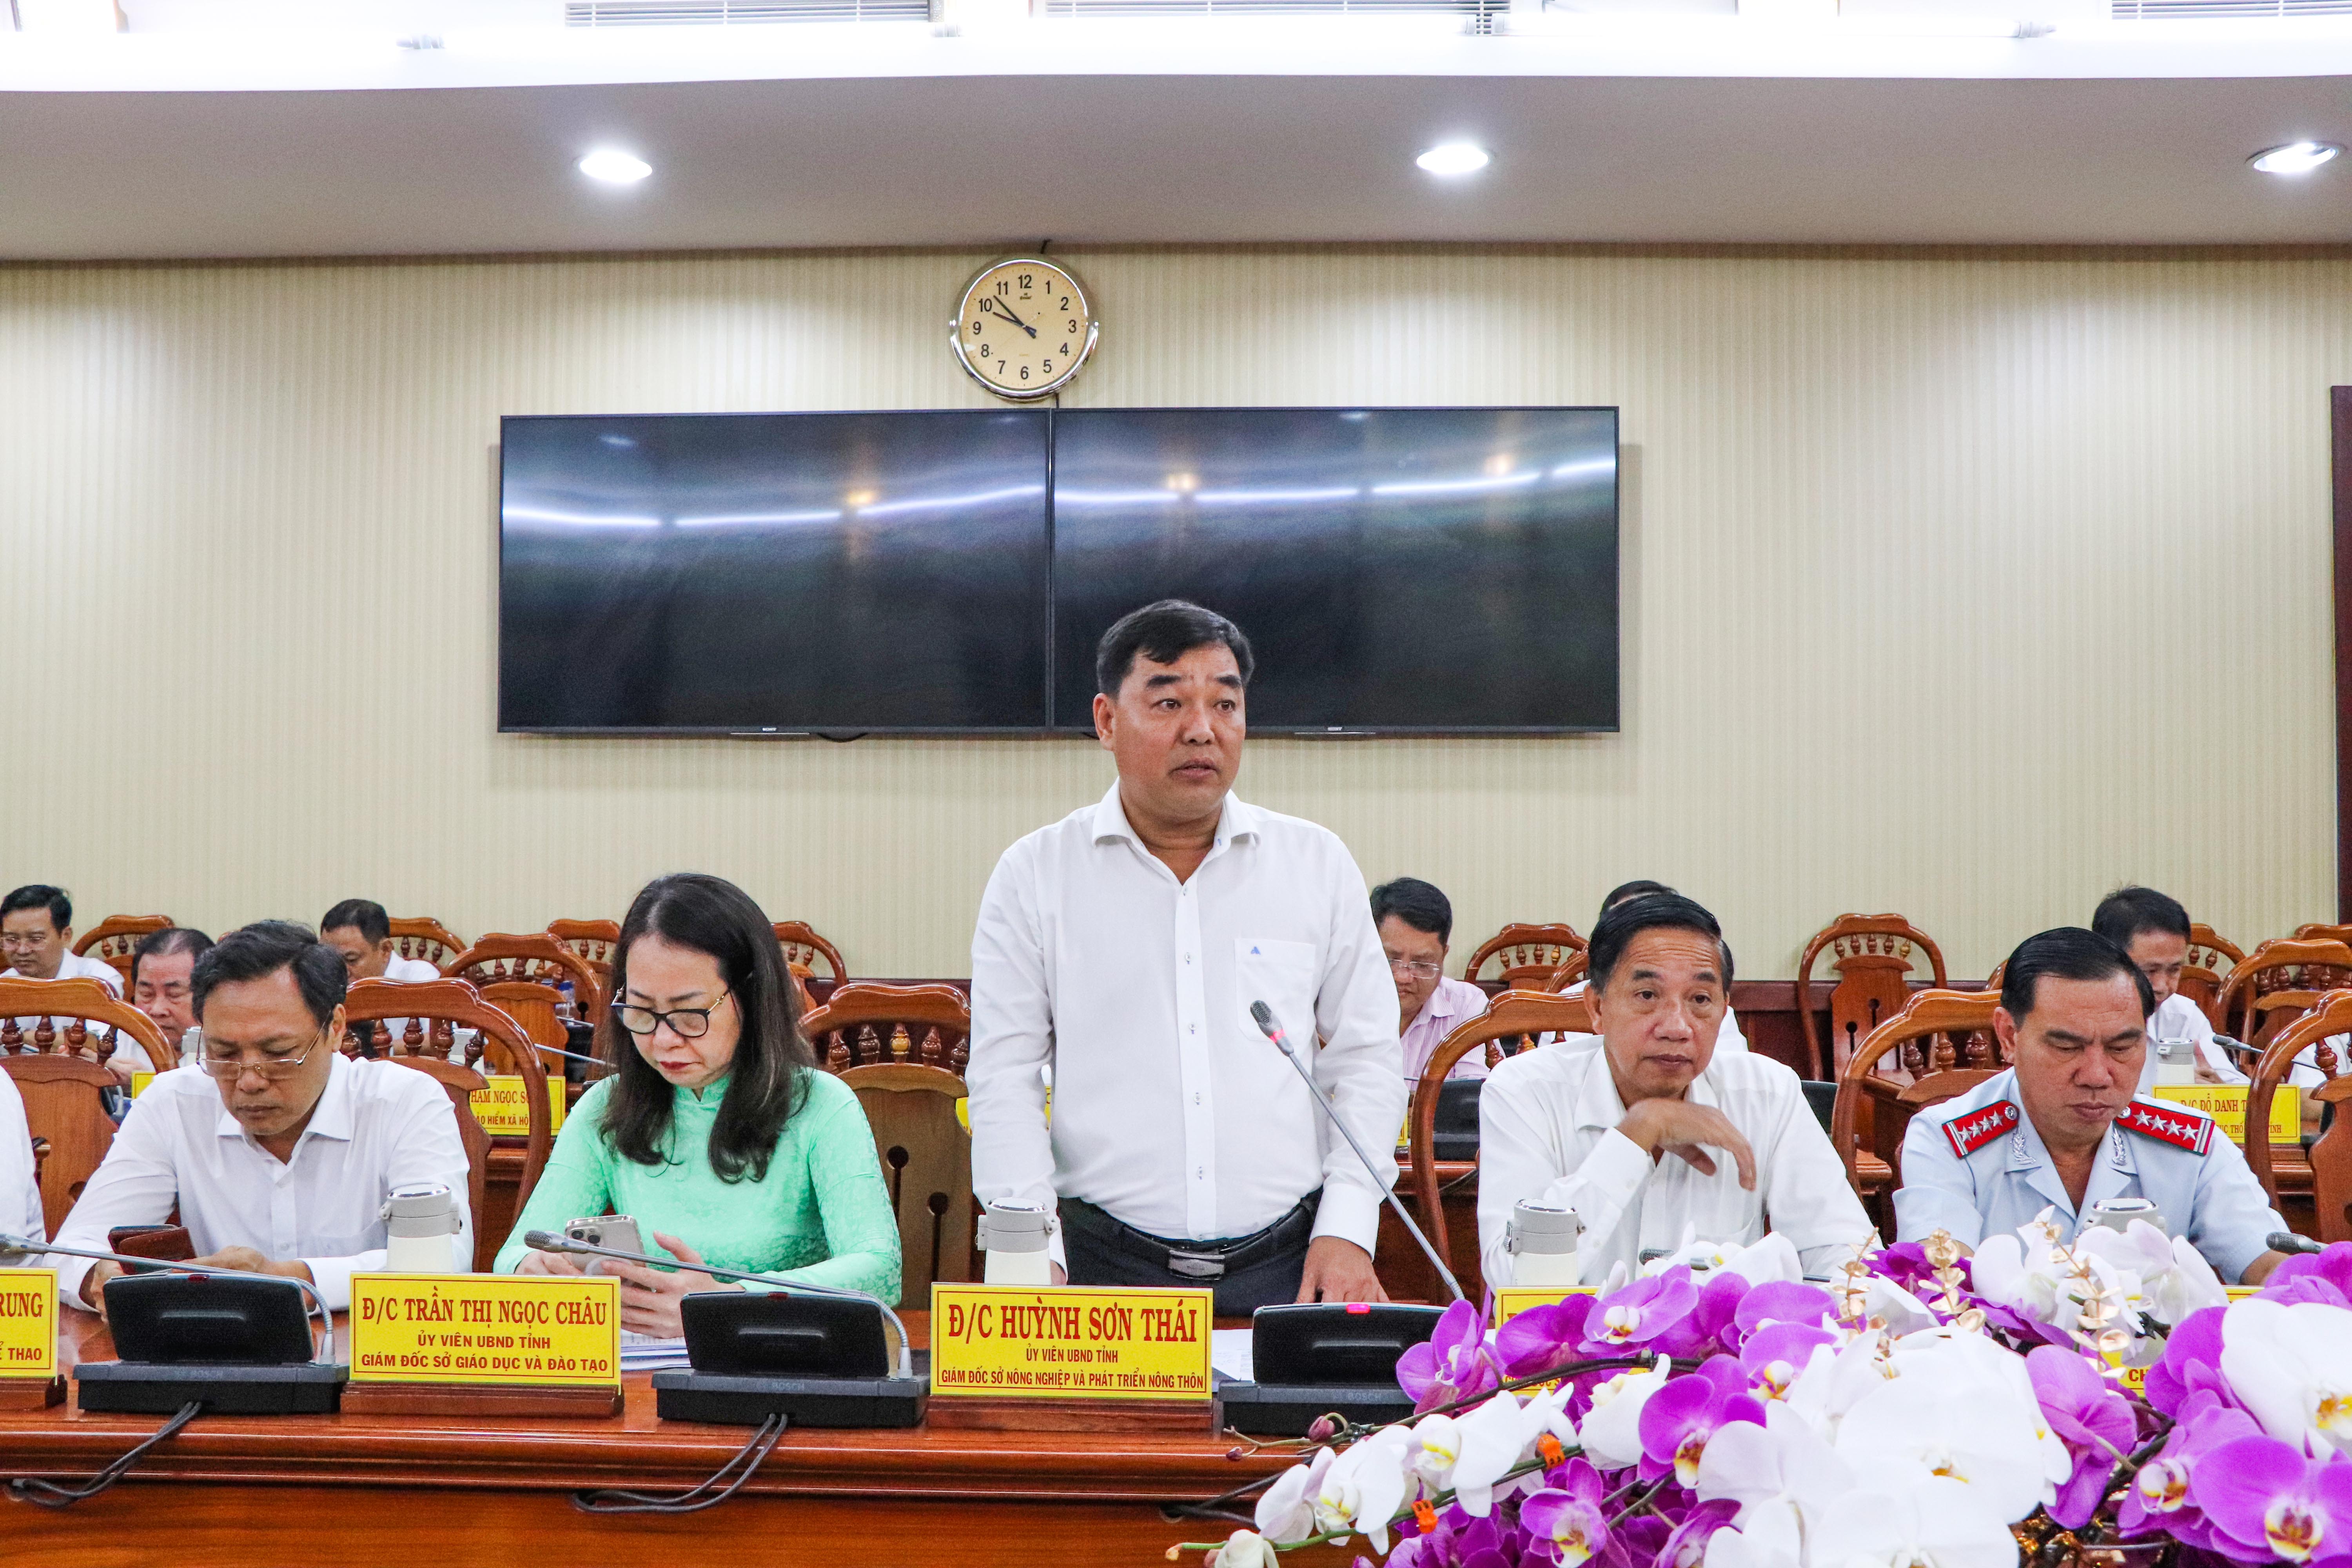 Huỳnh Sơn Thái, Giám đốc Sở NN-PTNT tỉnh phát biểu ý kiến về nâng cao chất lượng các tiêu chí xây dựng xã nông thôn mới, huyện nông thôn mới; tình hình sản xuất nông nghiệp trên địa bàn tỉnh.